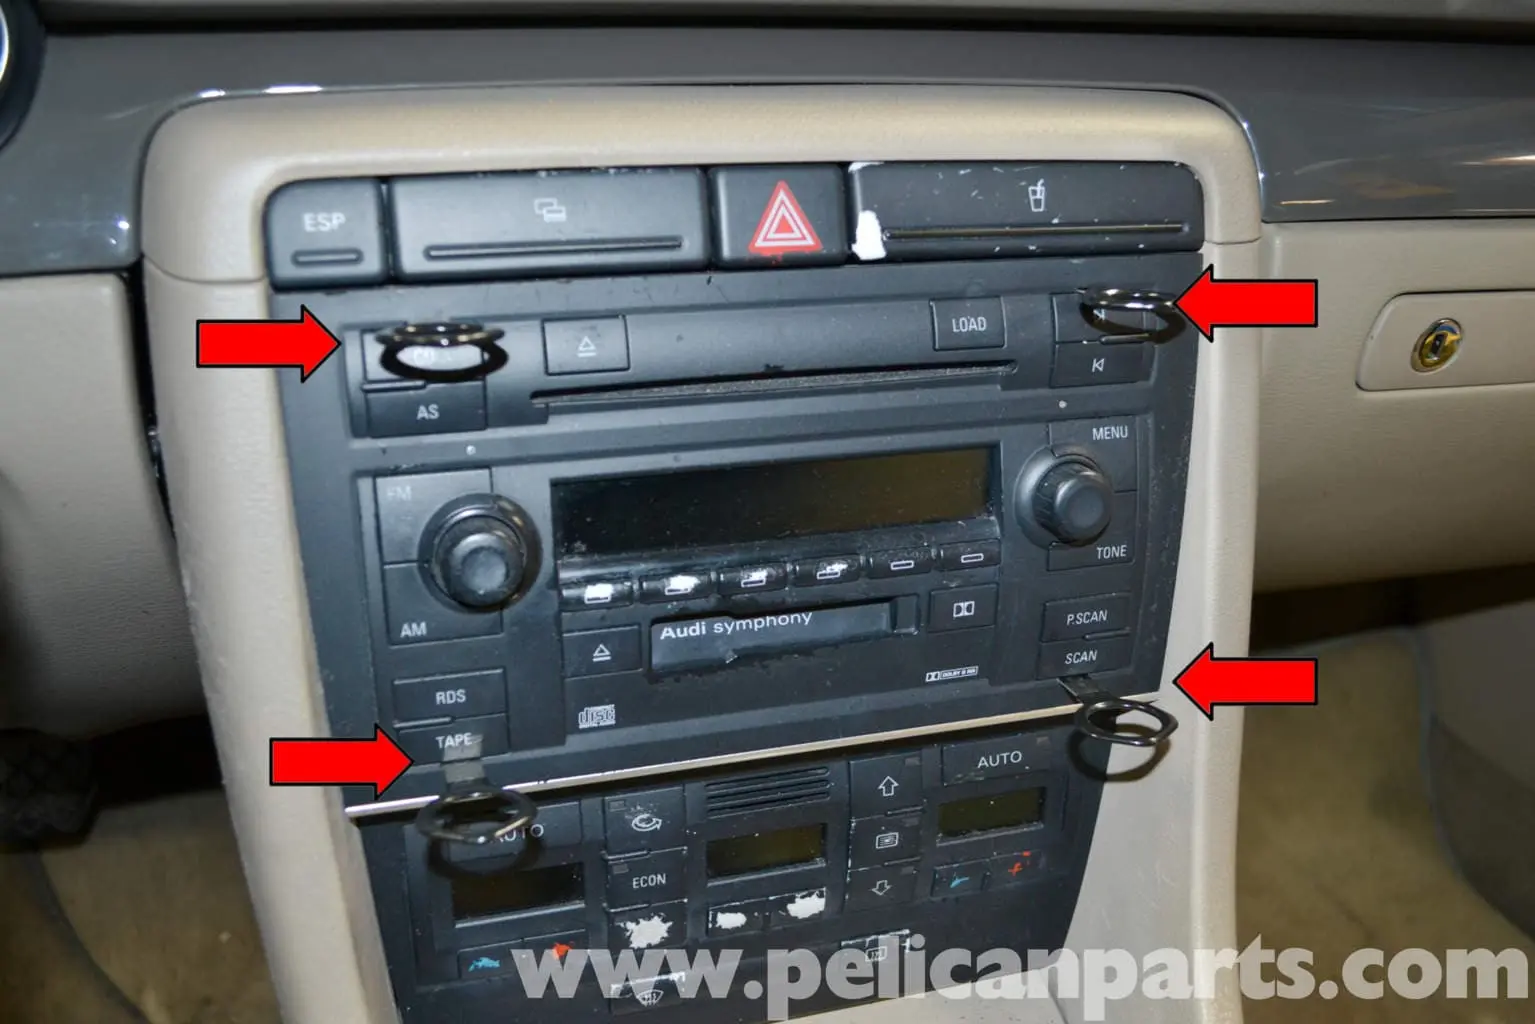 a4 b6 przygasa climatronic i radio - Dlaczego Audi A4 b6 to Małysz